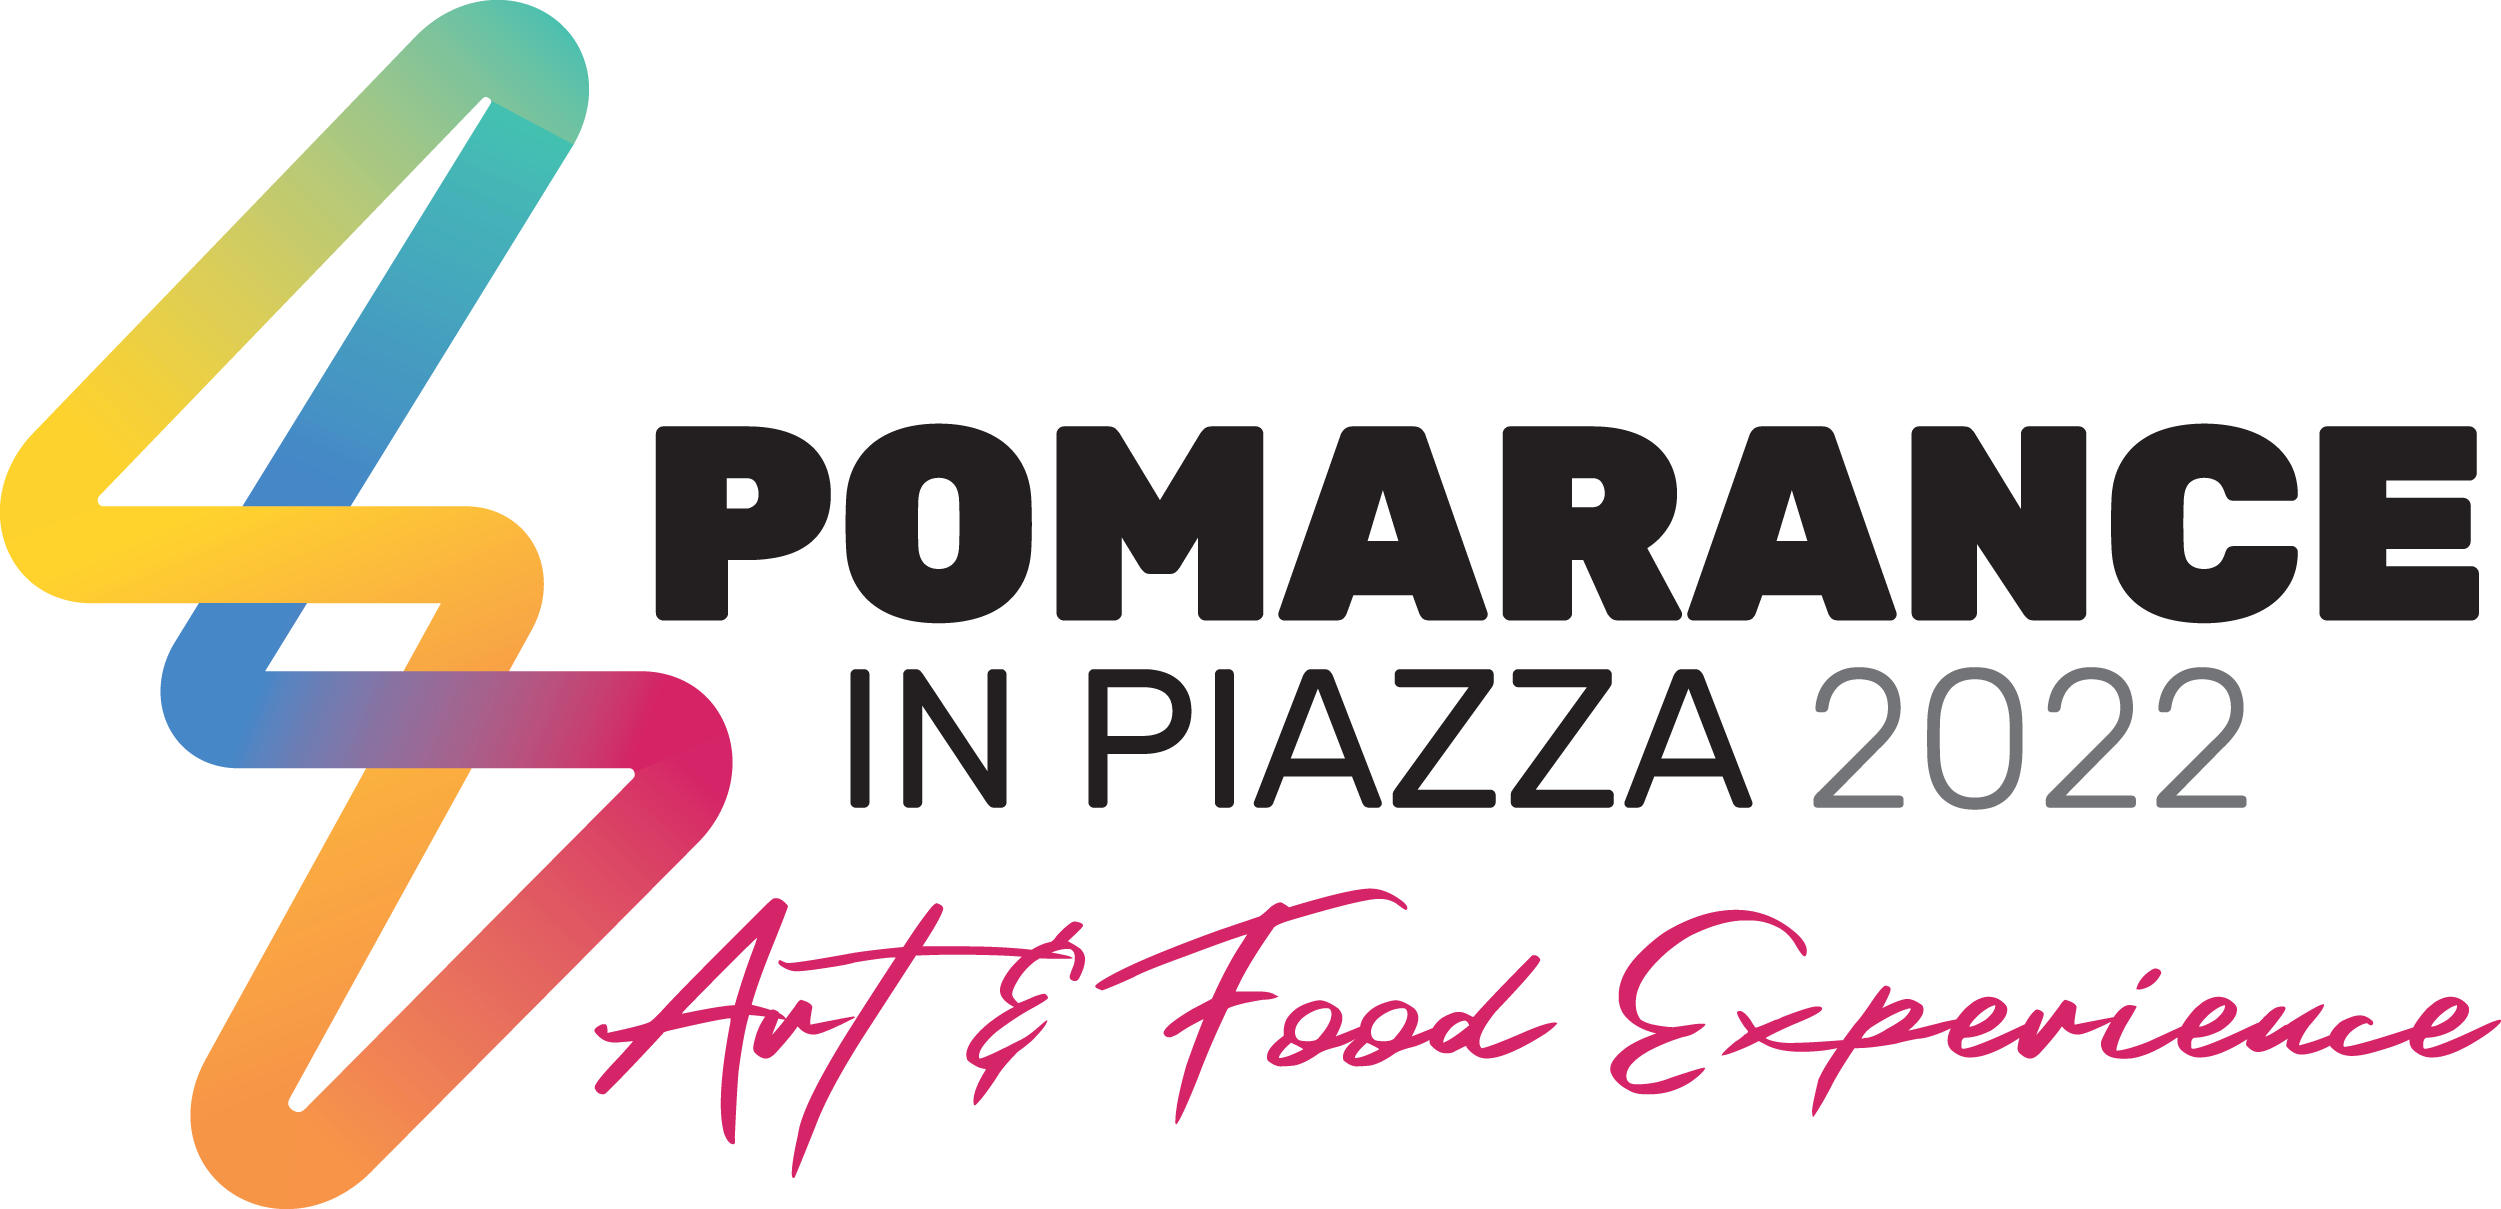 Pomarance in Piazza 2022